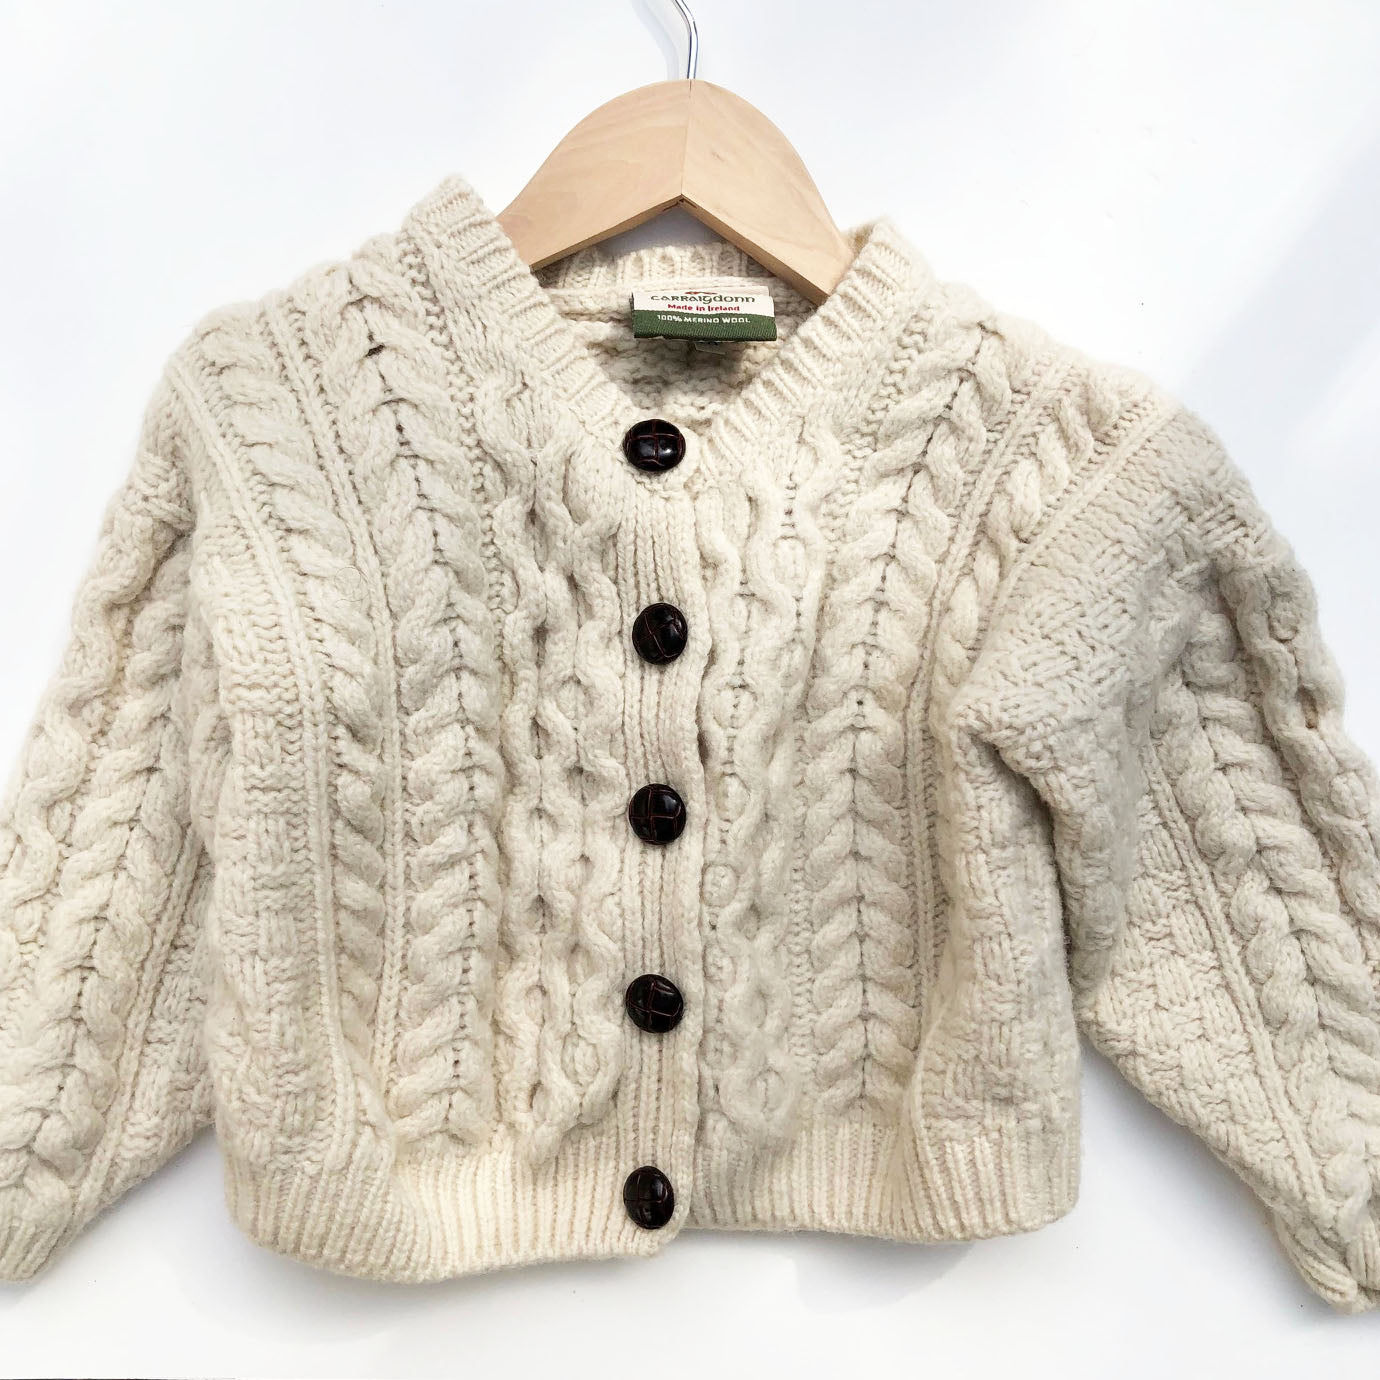 Little Arran knit Cardigan from Ireland Size 2-3